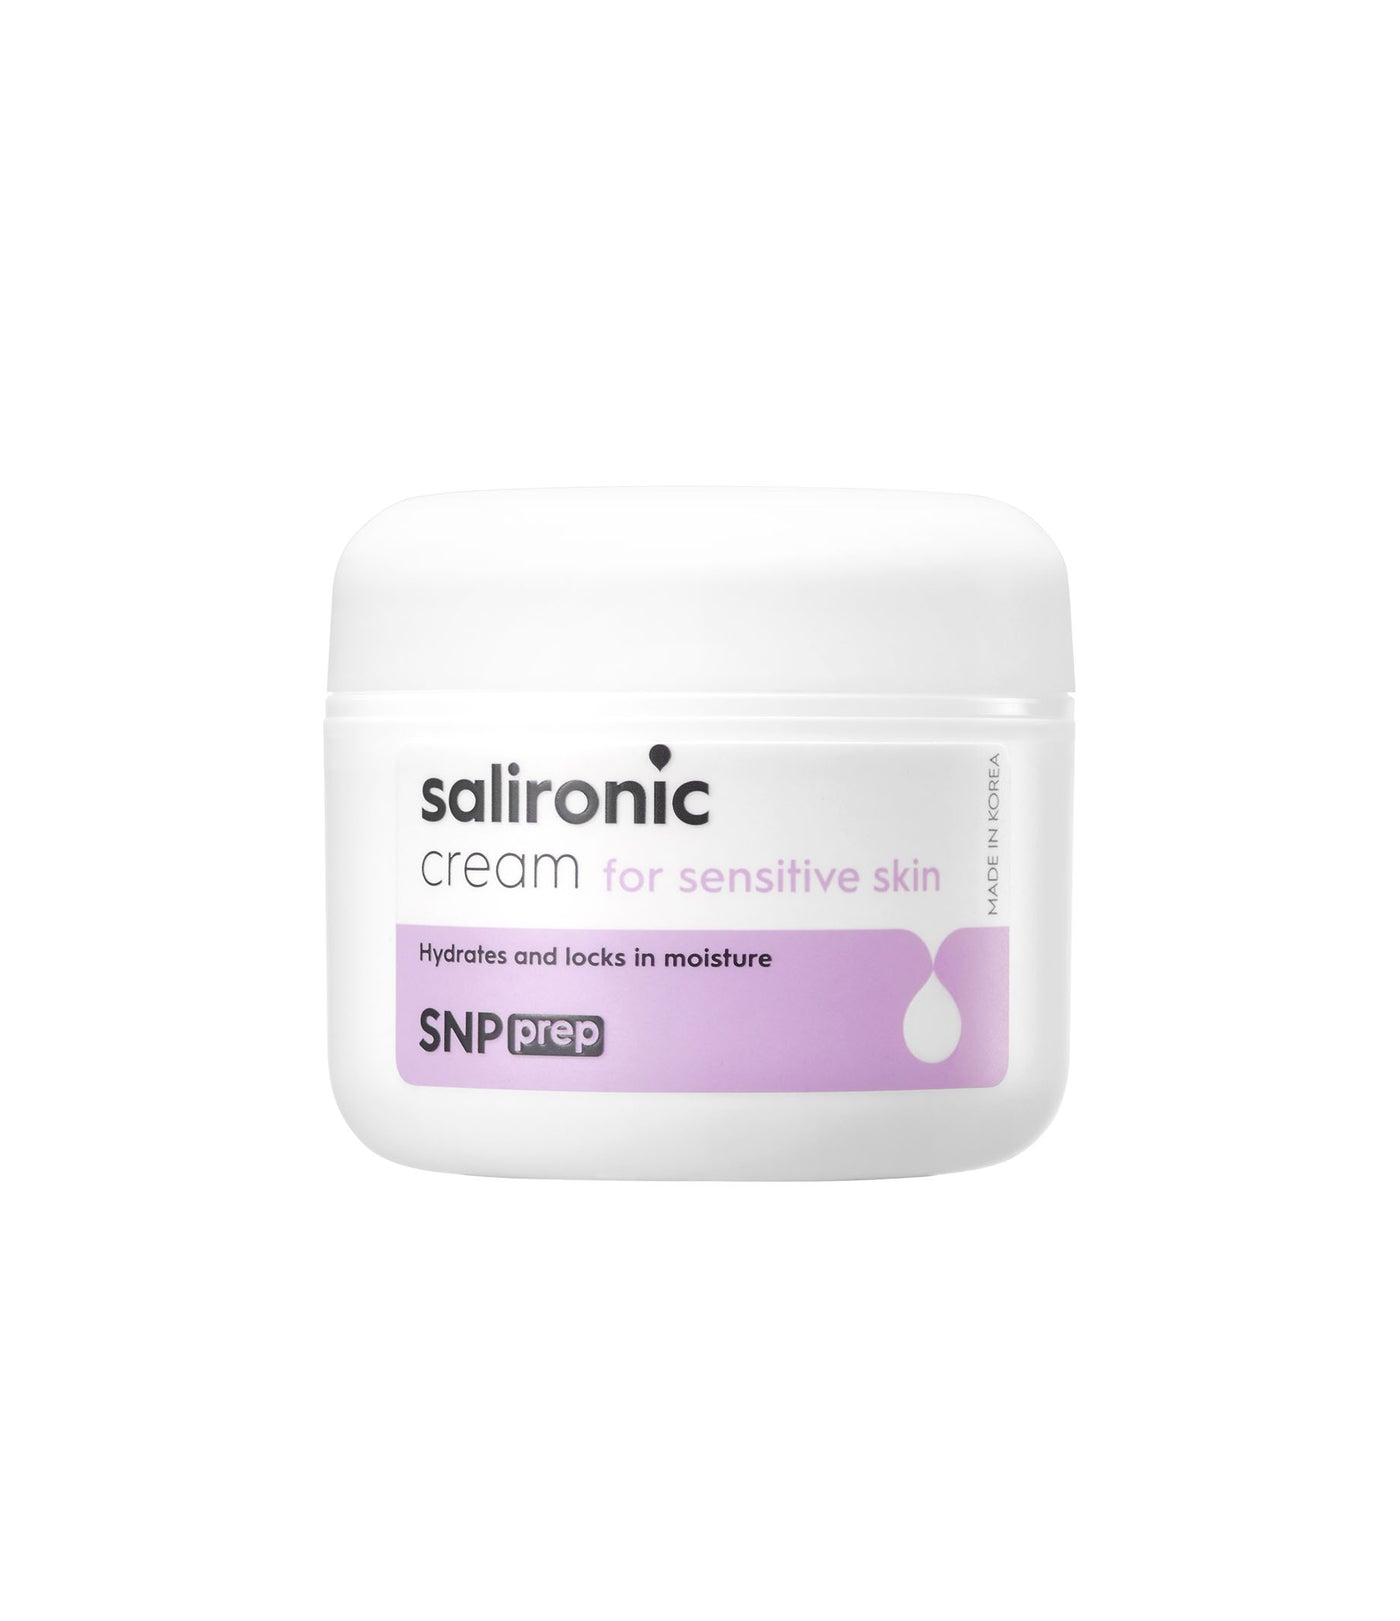 SNP Prep Salironic Cream